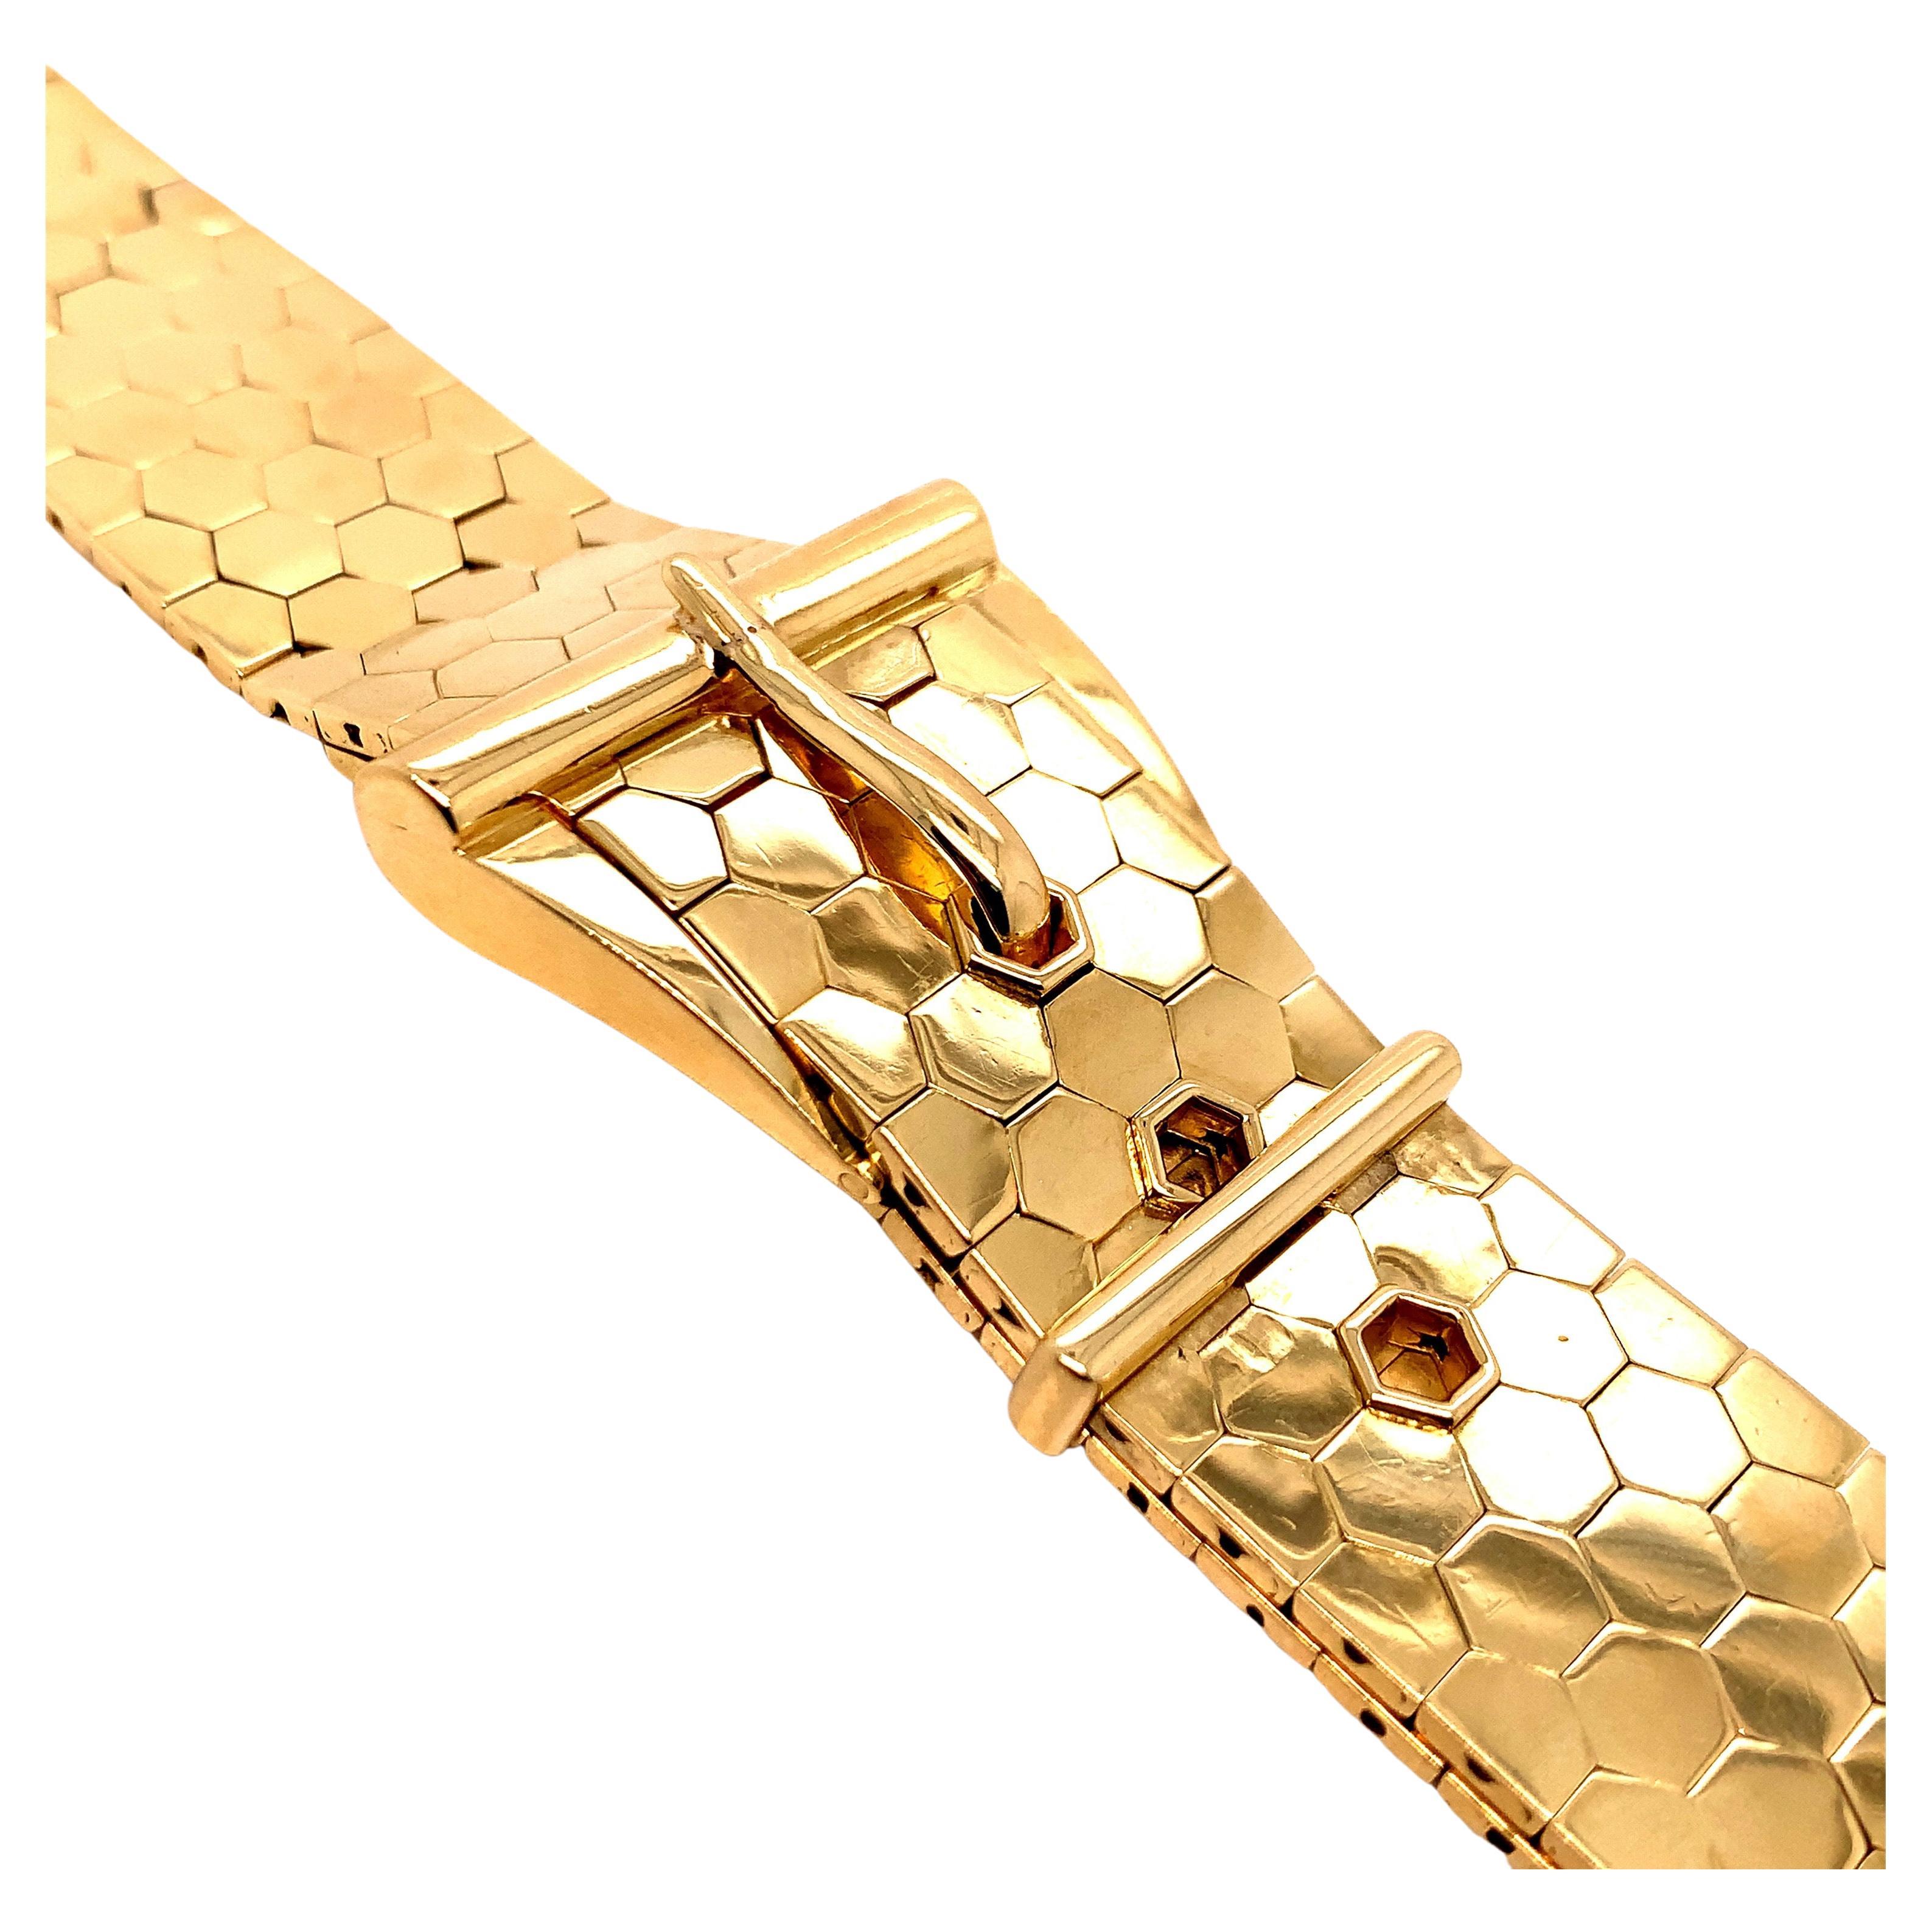 Gold Belt Buckle Wrist Watch For Sale